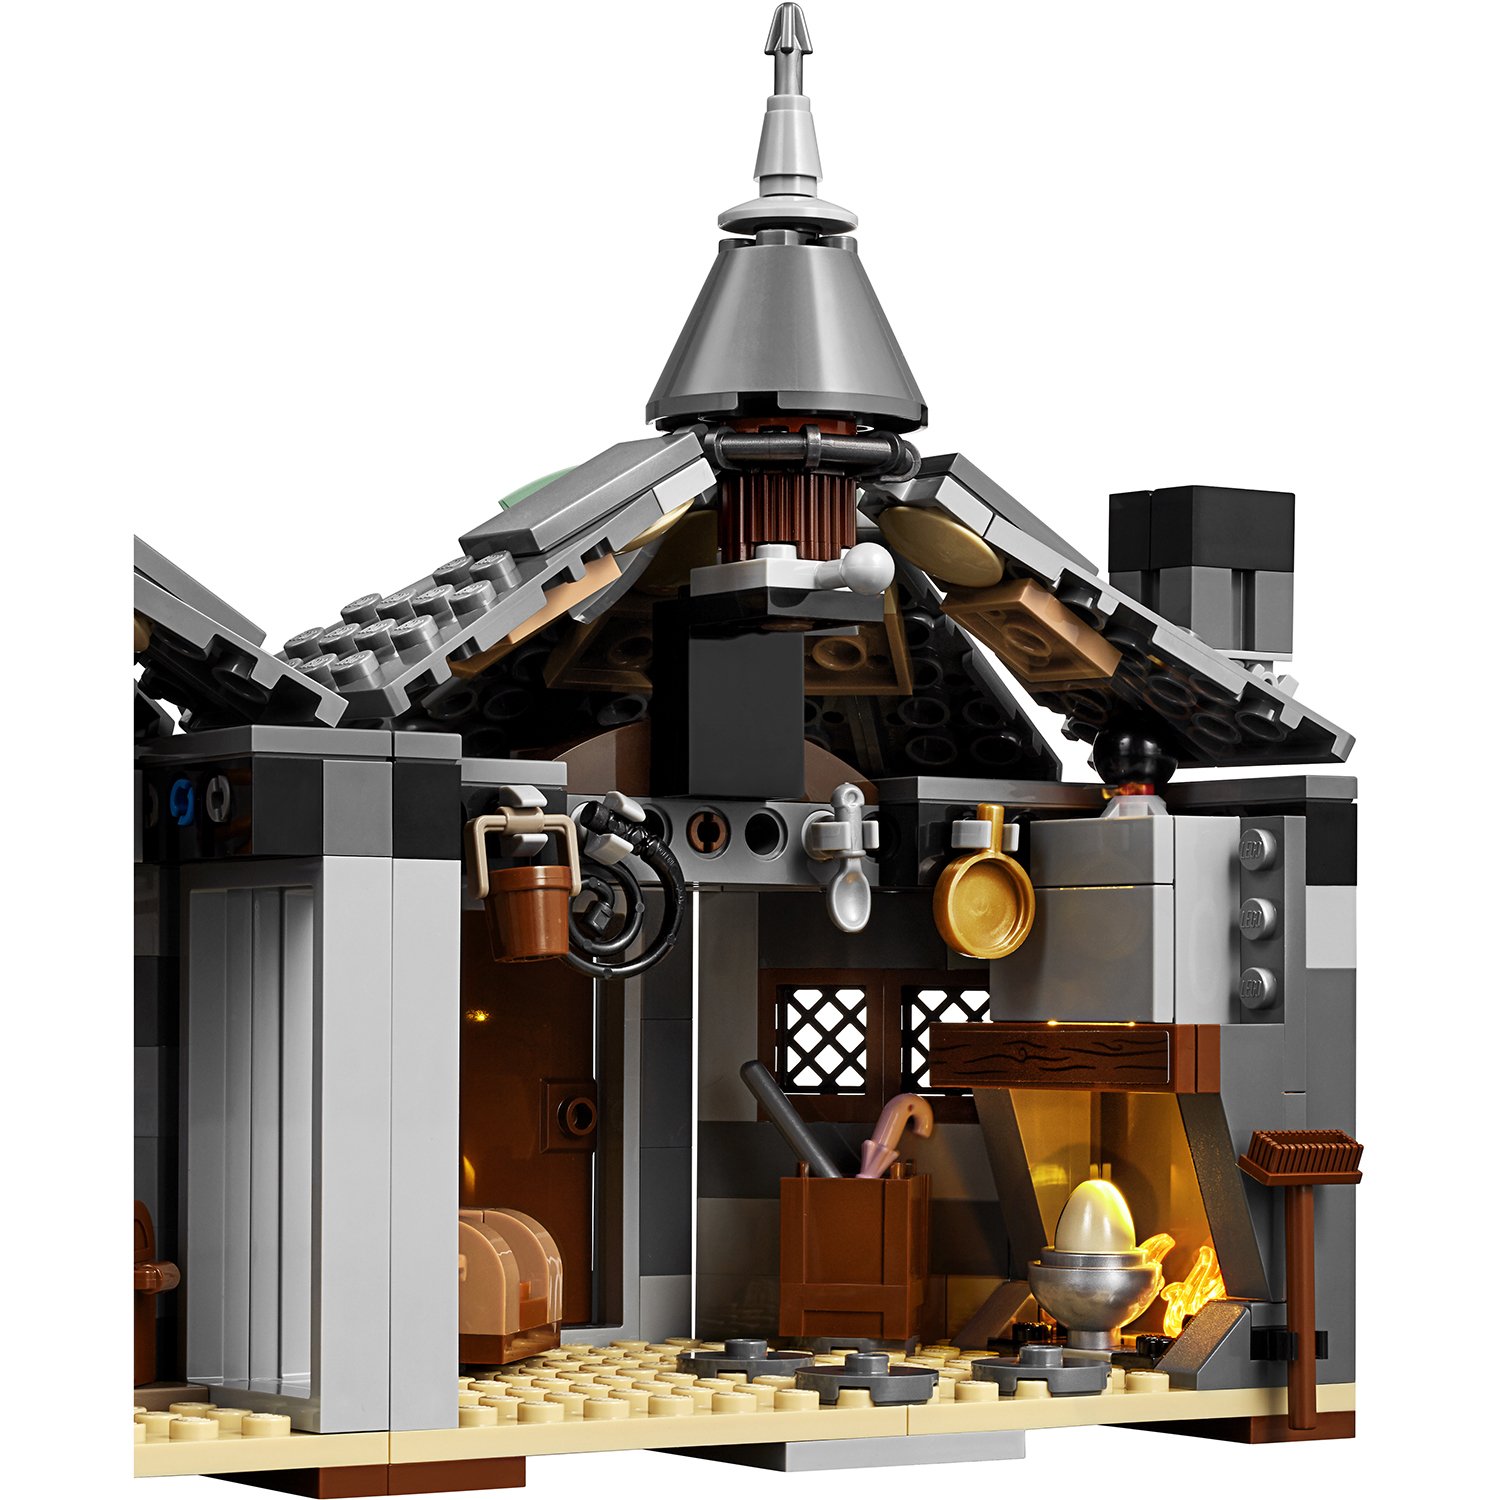 Lego Harry Potter 75947 Хижина Хагрида: спасение Клювокрыла